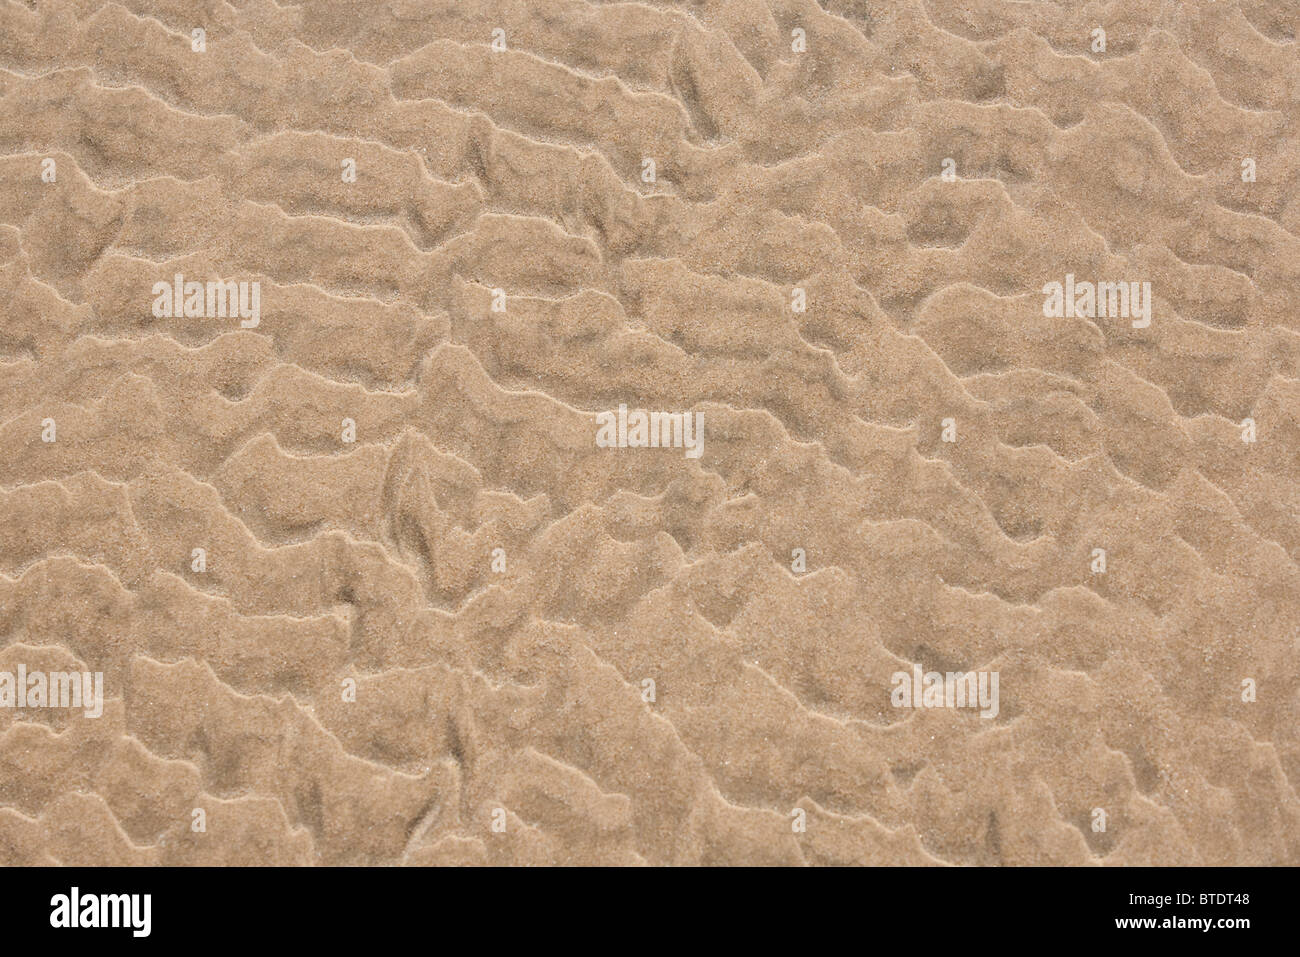 Ripple patterns dans le sable de la plage Banque D'Images